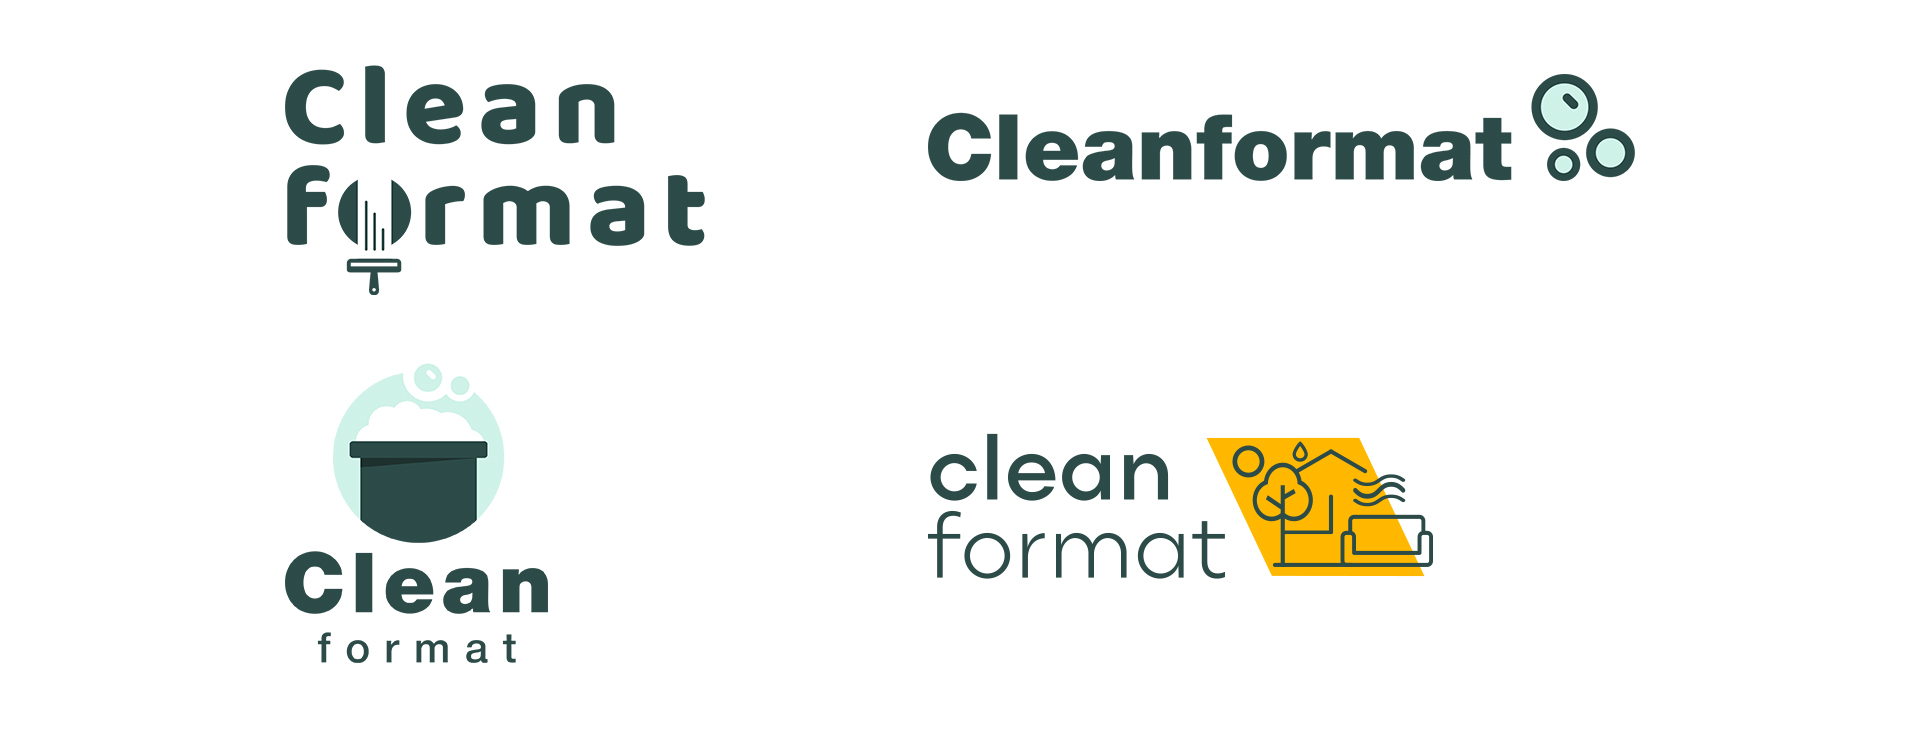 cleaner logo 2.jpg